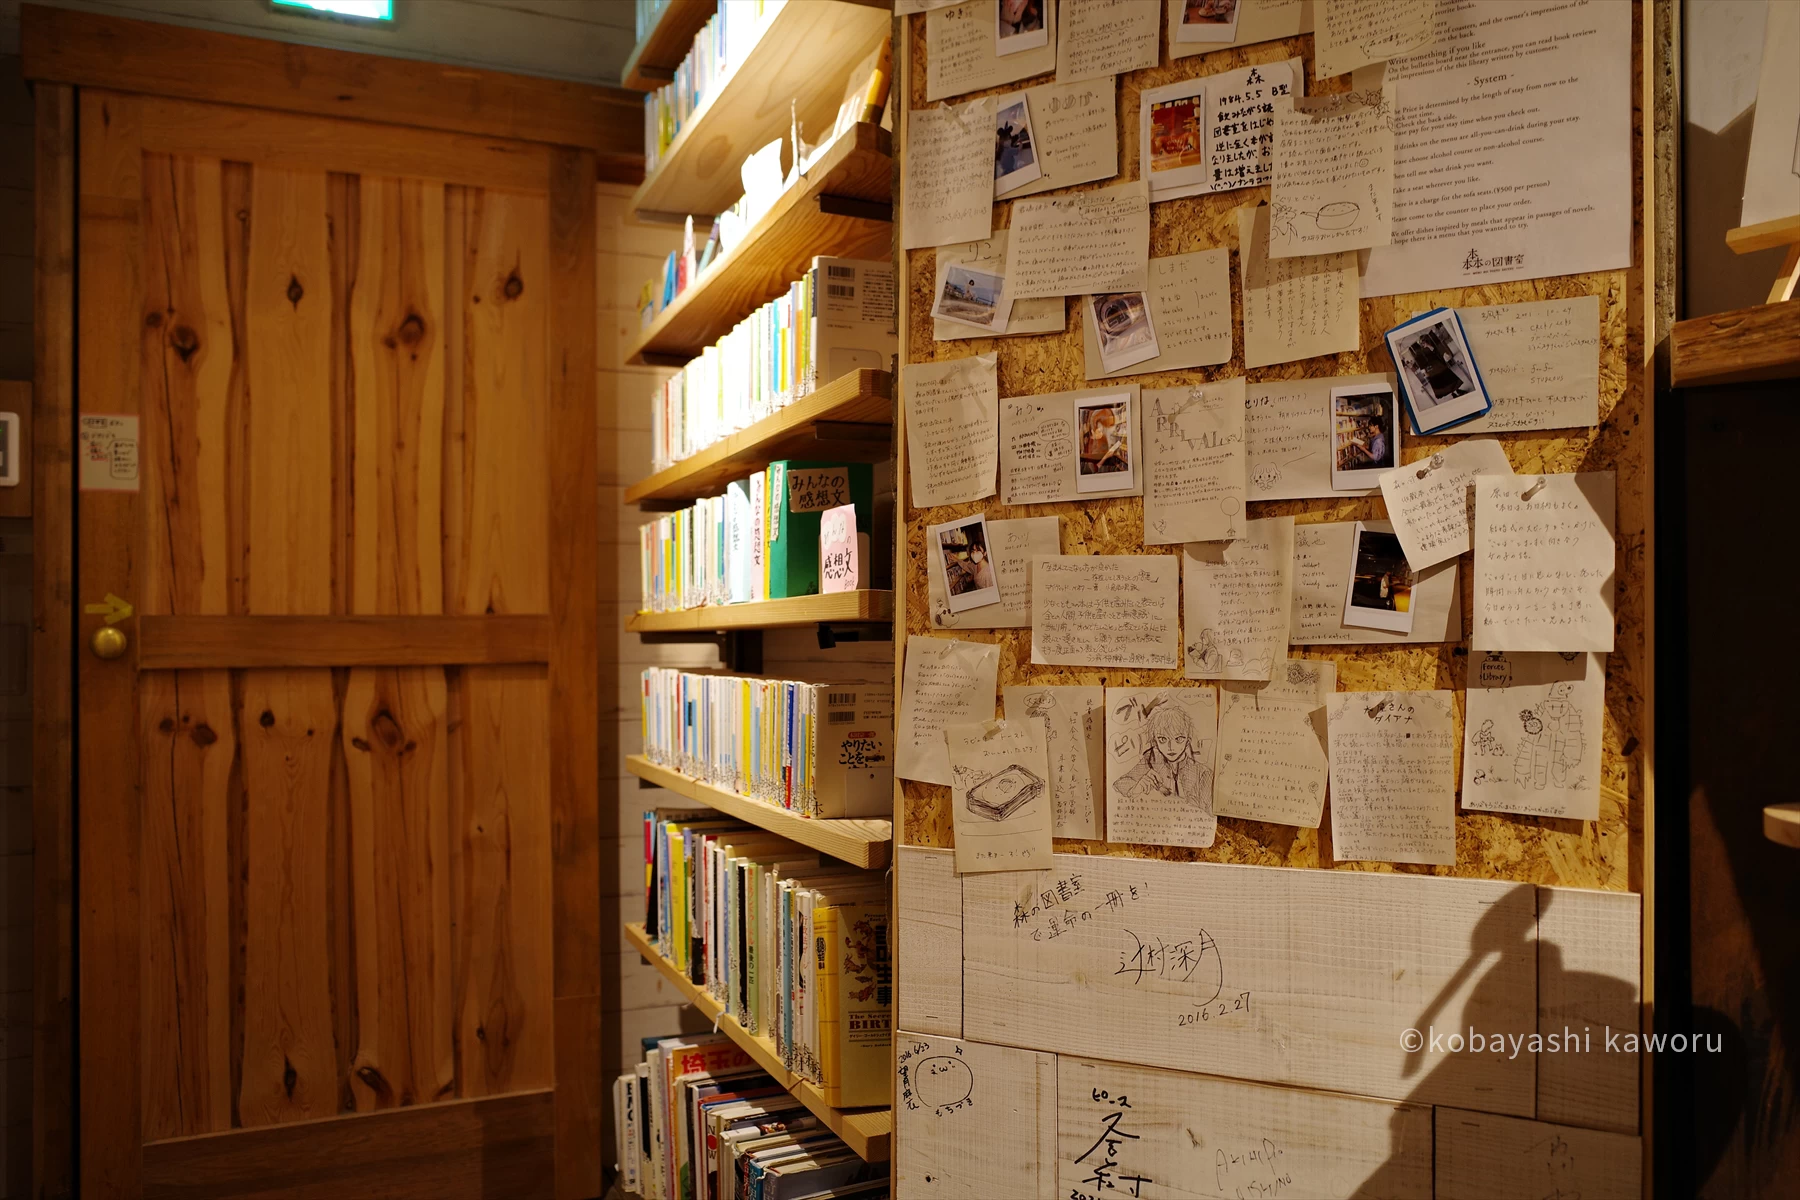 壁には図書委員の紹介と、お客さんの感想メモ